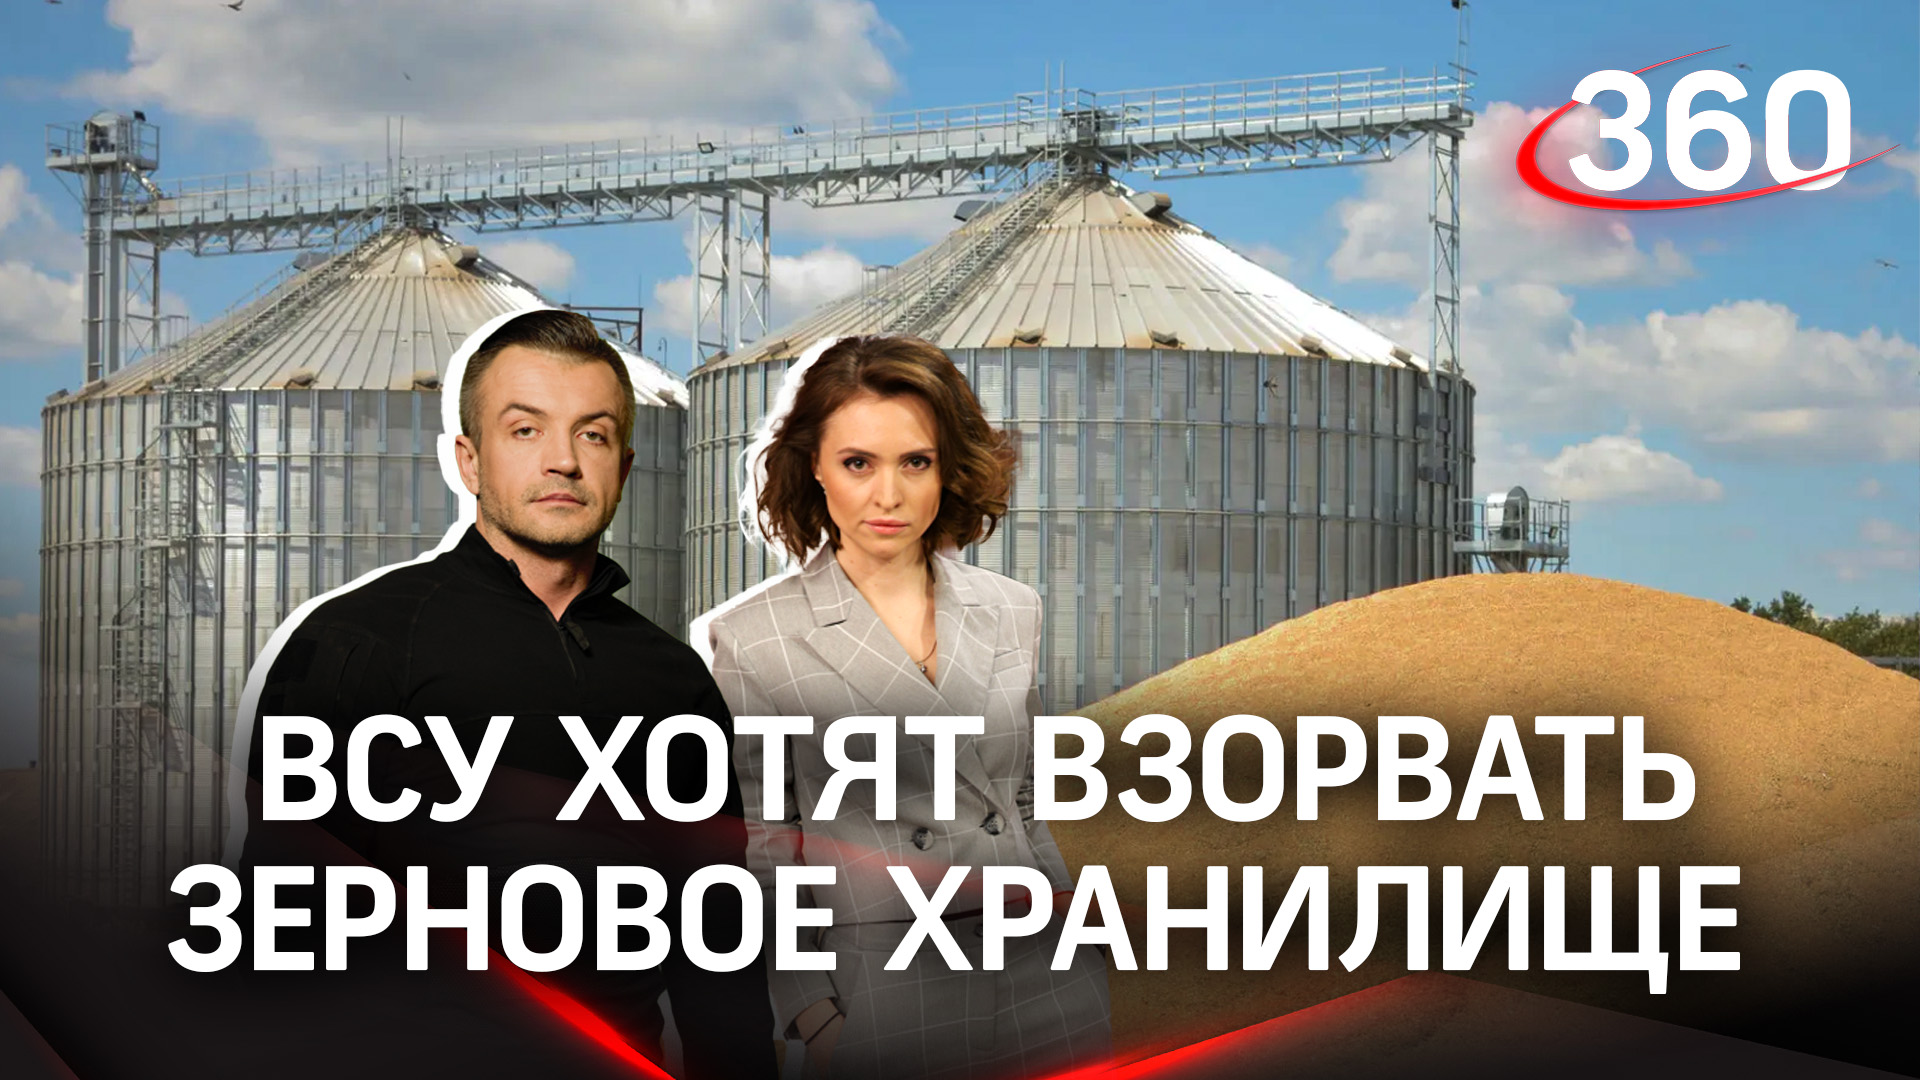 ВСУ планируют взорвать зерновое хранилище в Харьковской области|Екатерина Малашенко и Антон Шестаков